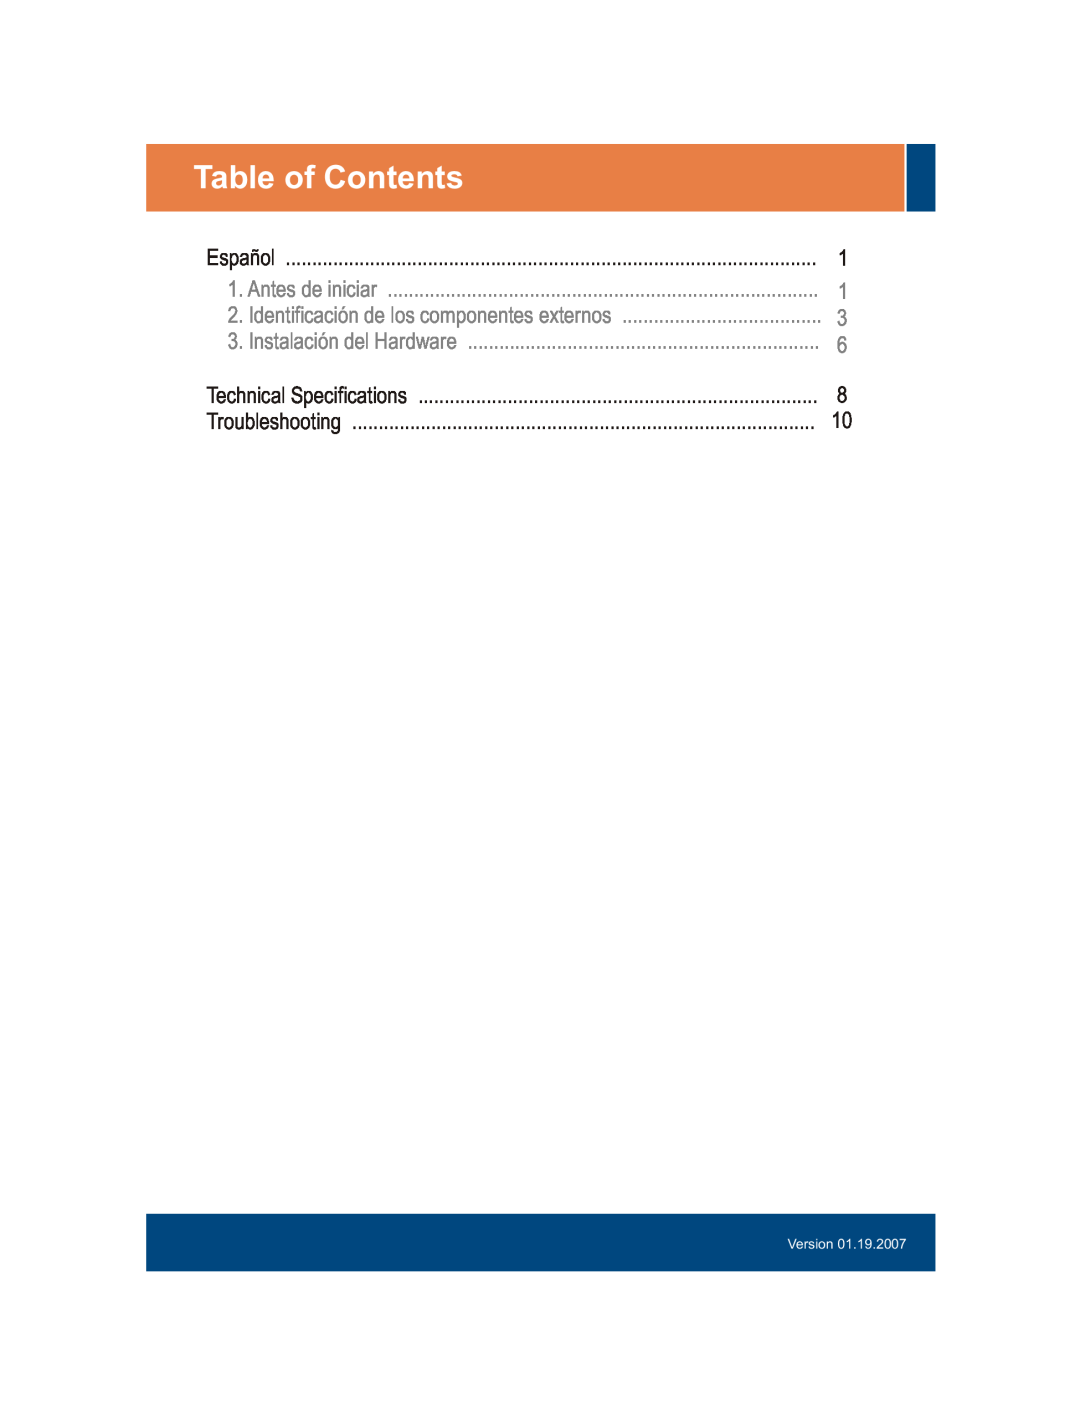 TRENDnet TPE-S44 Table of Contents, Antes de iniciar, Identificación de los componentes externos, Instalación del Hardware 